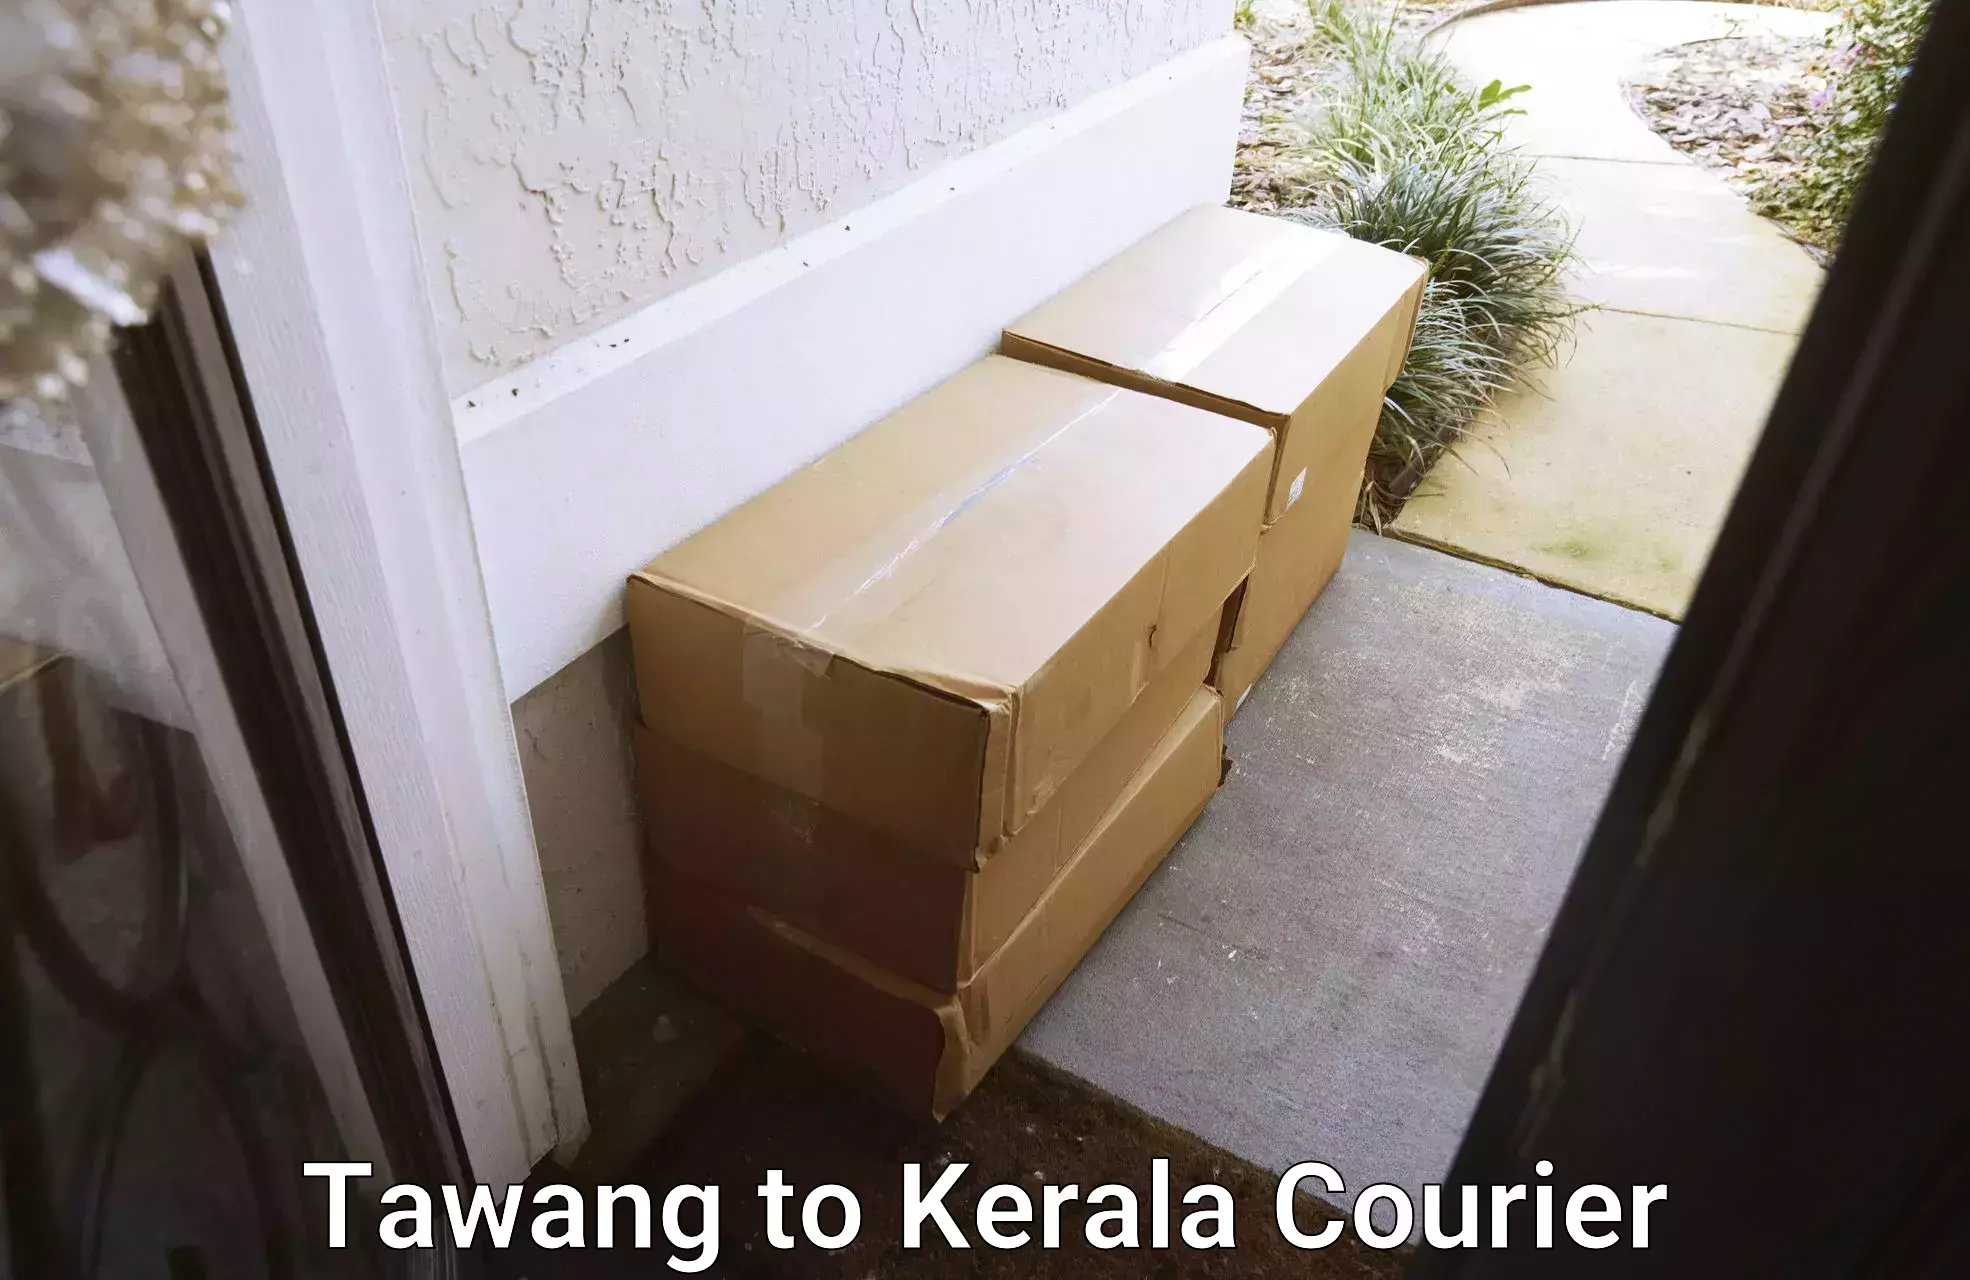 Nationwide delivery network Tawang to IIIT Kottayam